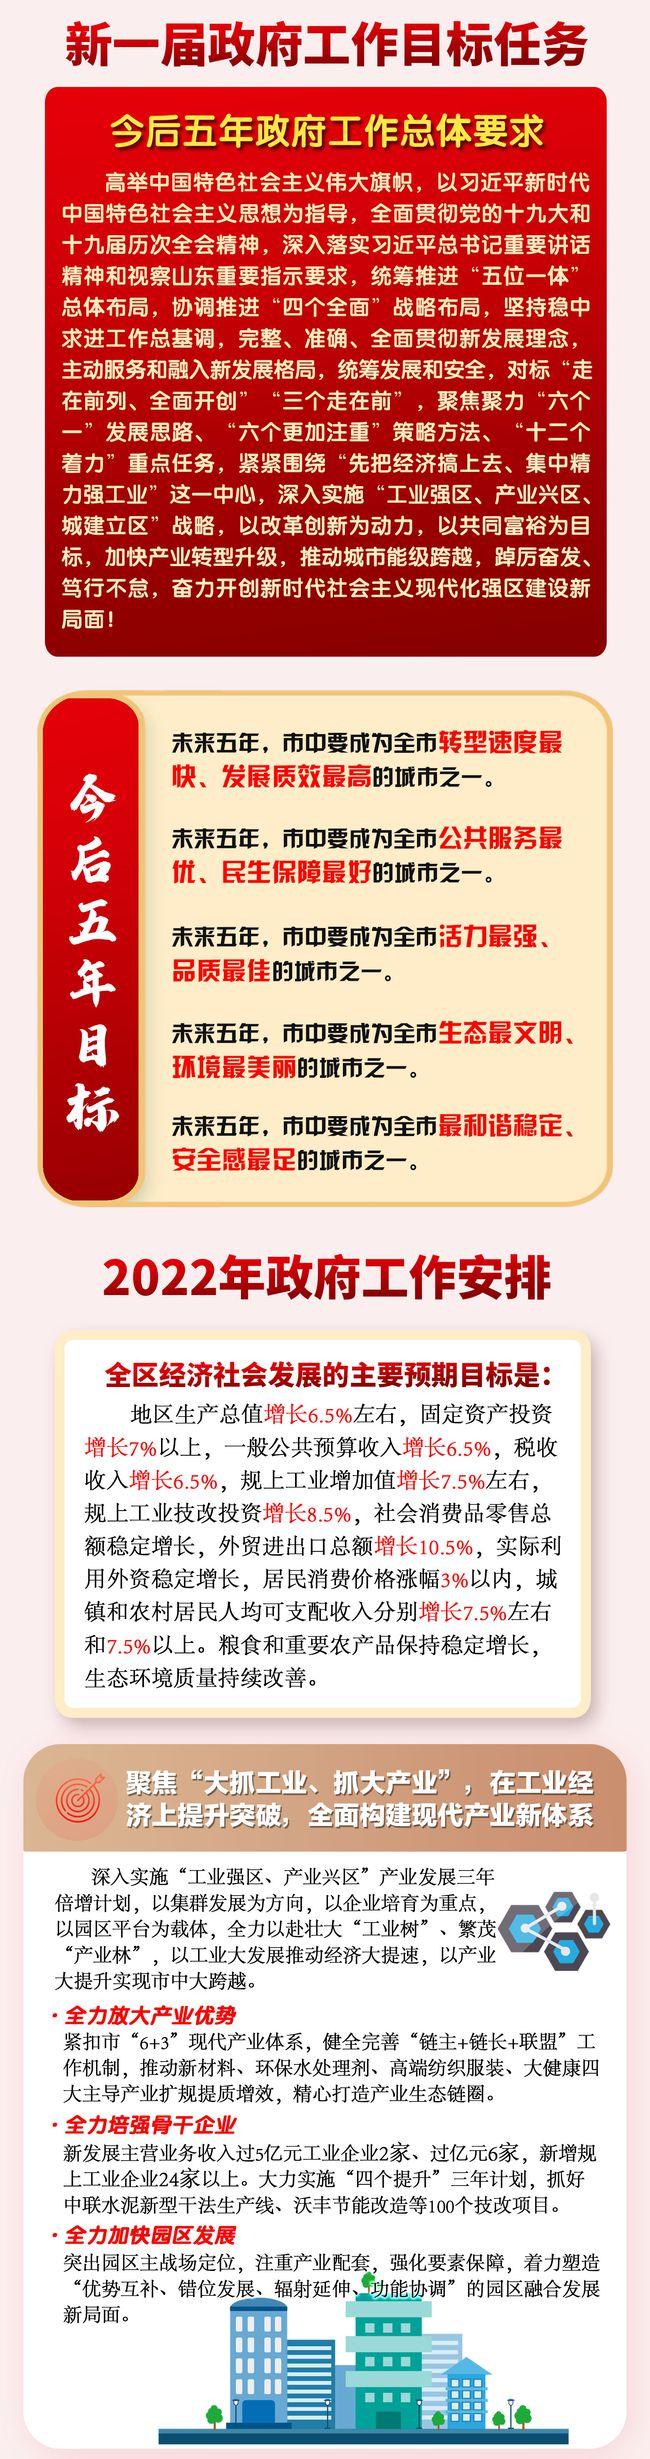 看图读枣庄市中区2022政府工作报告